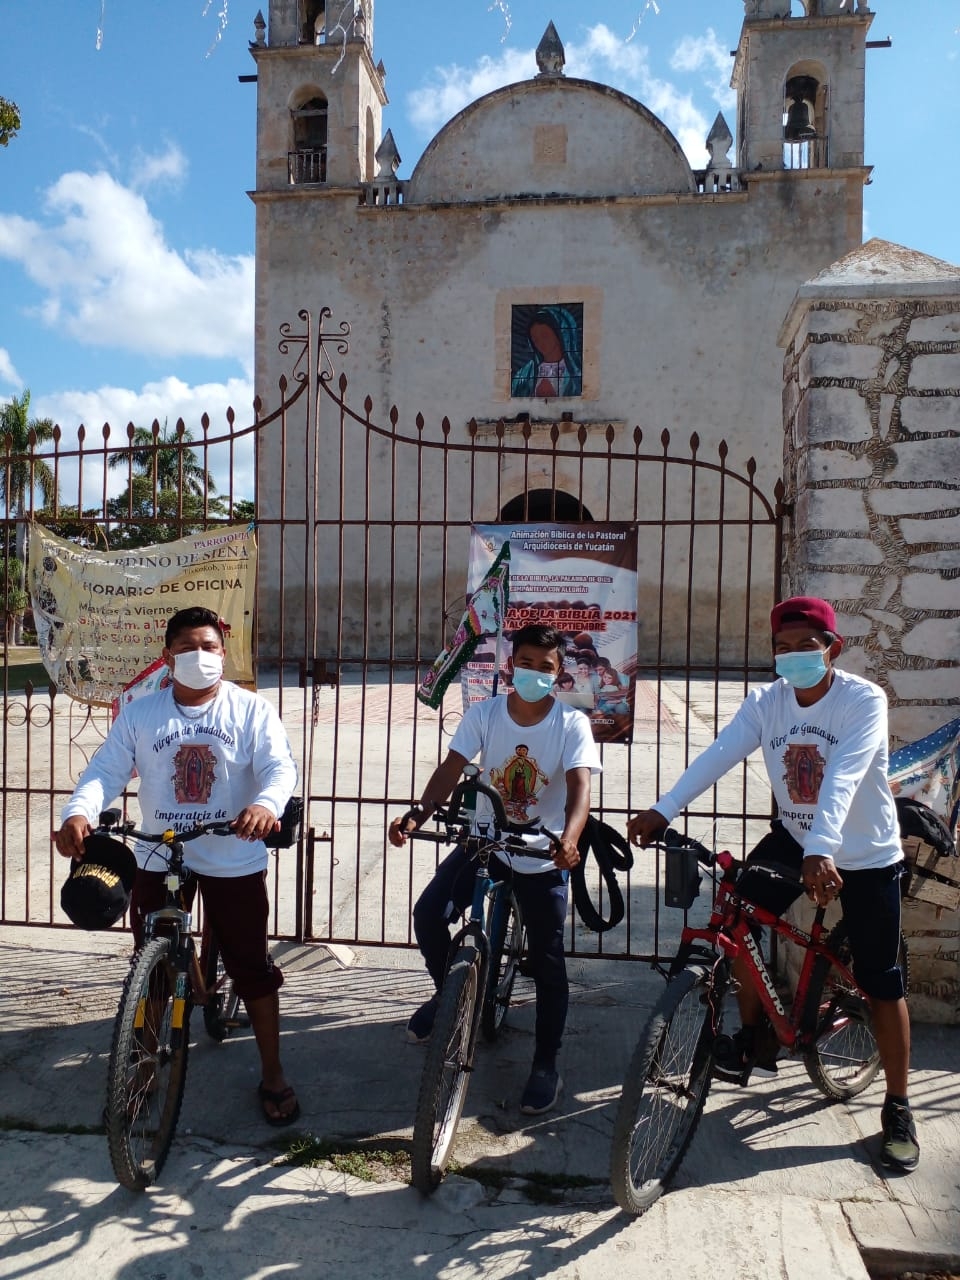 Los peregrinos llegaron a las afueras de la Iglesia de Guadalupe en Tixkokob como promesa por las bendiciones recibidas